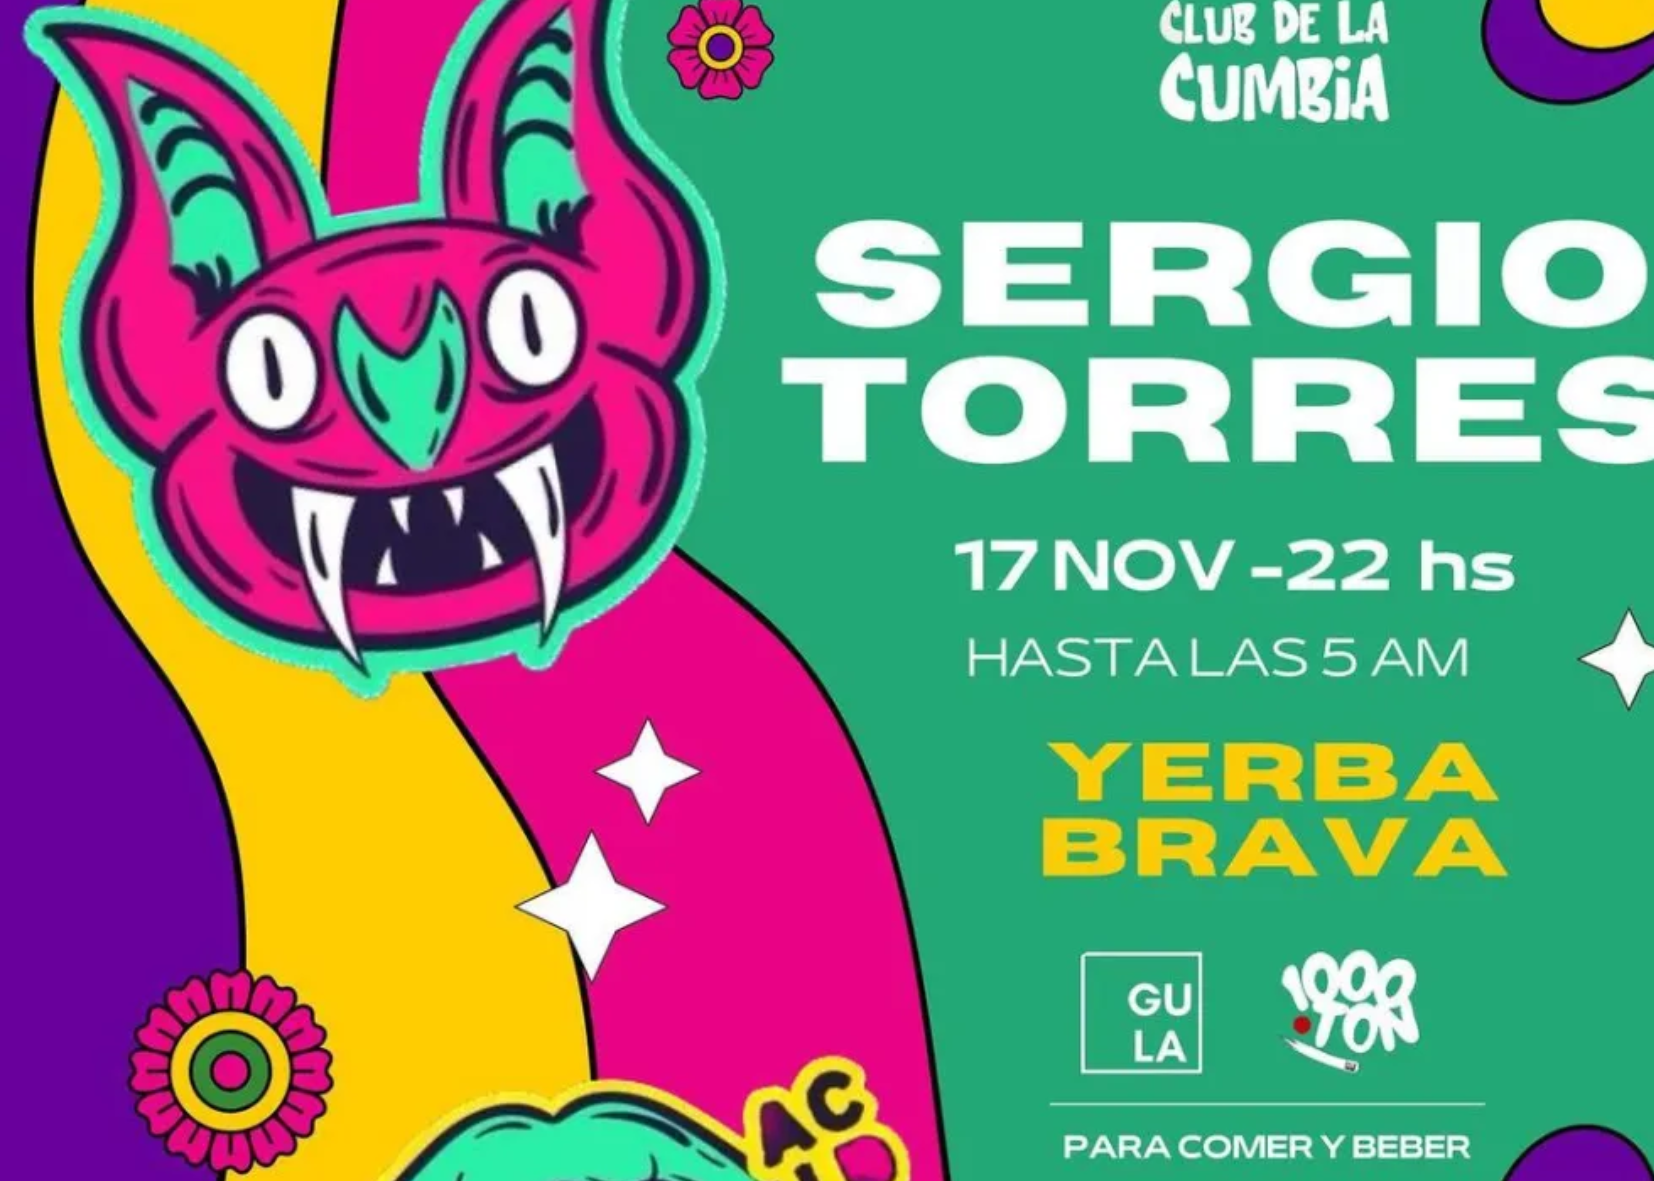 SERGIO TORRES en Club de la cumbia